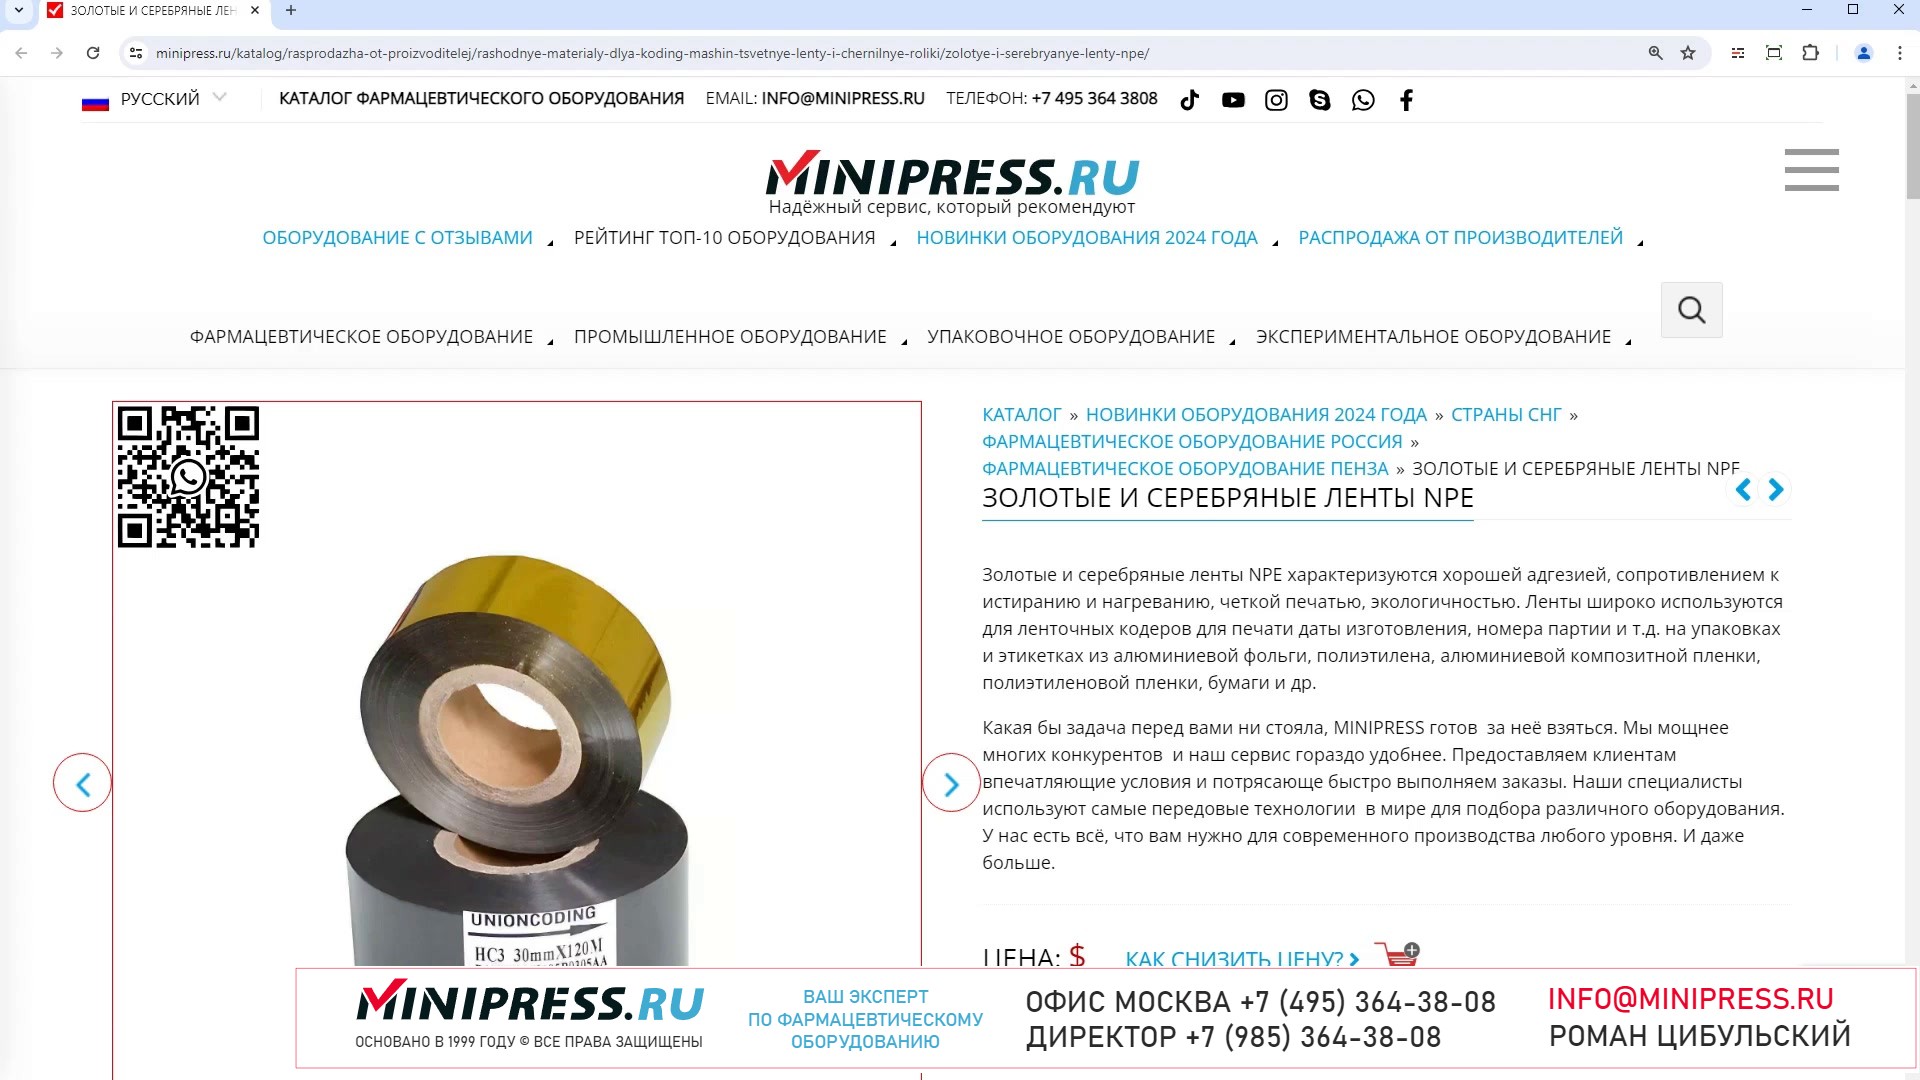 Minipress.ru Золотые и серебряные ленты NPE